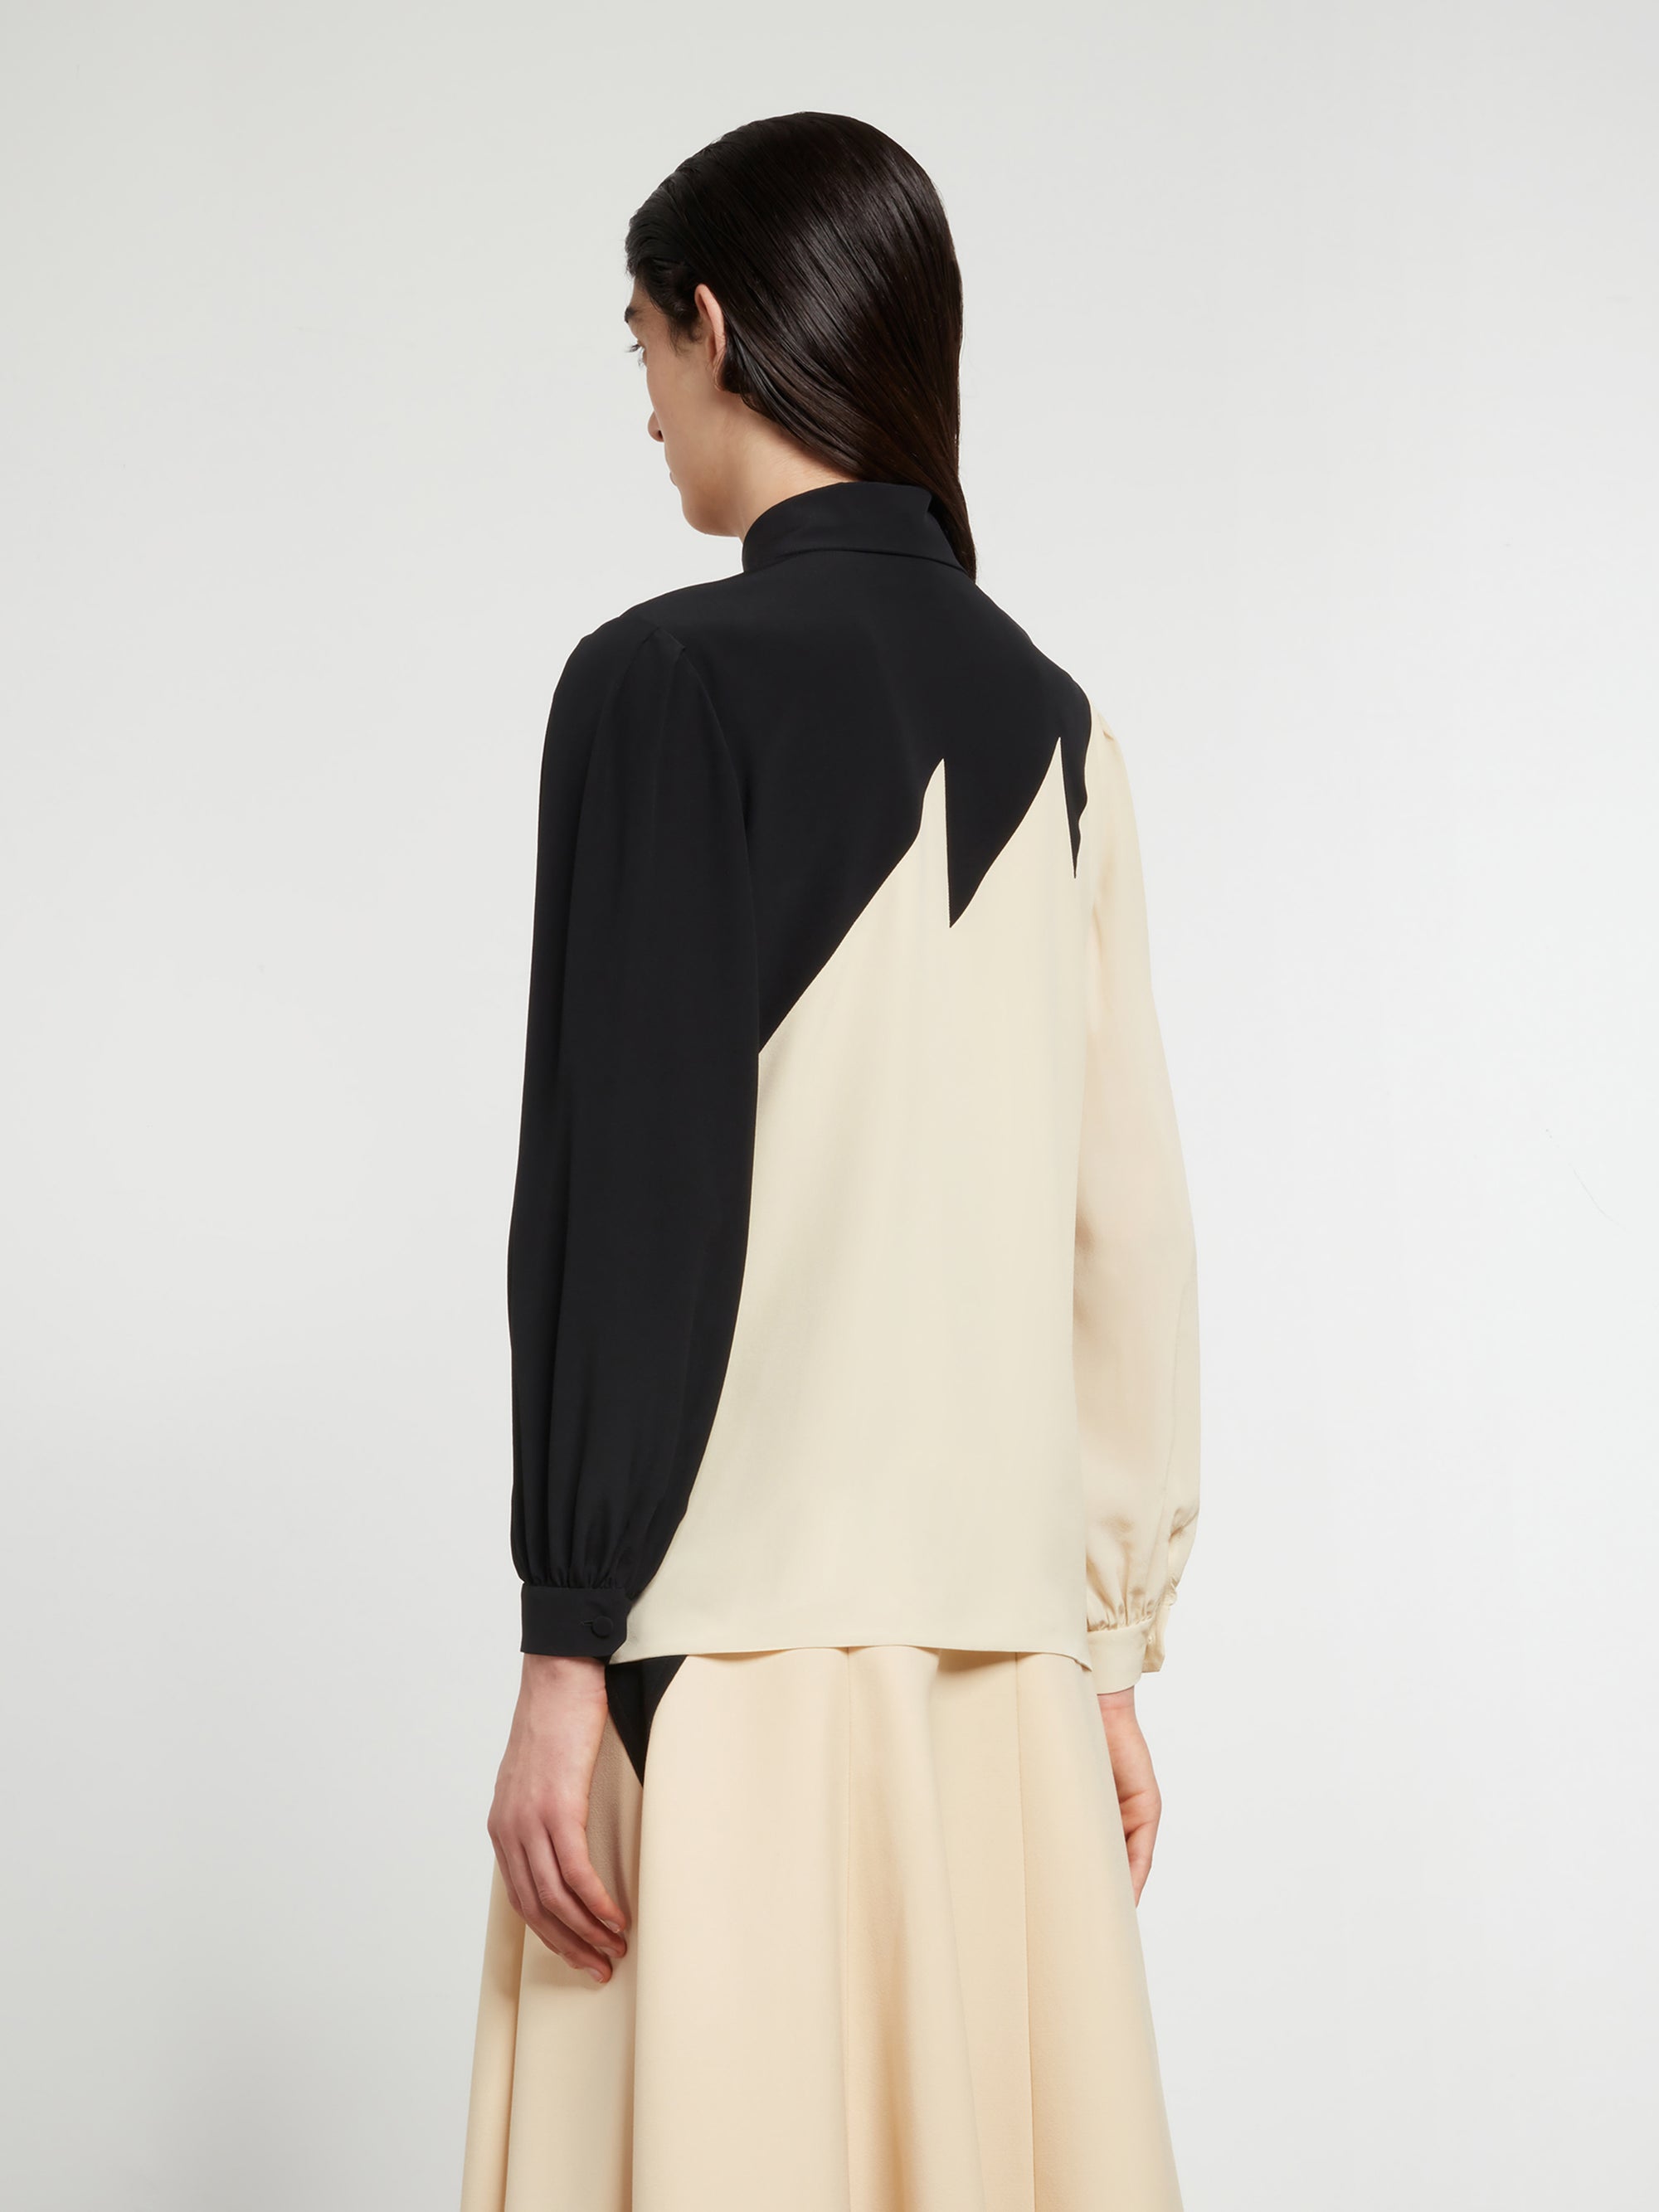 Gucci - Women’s DSM Exclusive Silk Crepe de Chine Shirt - (Black/Ivory) view 3